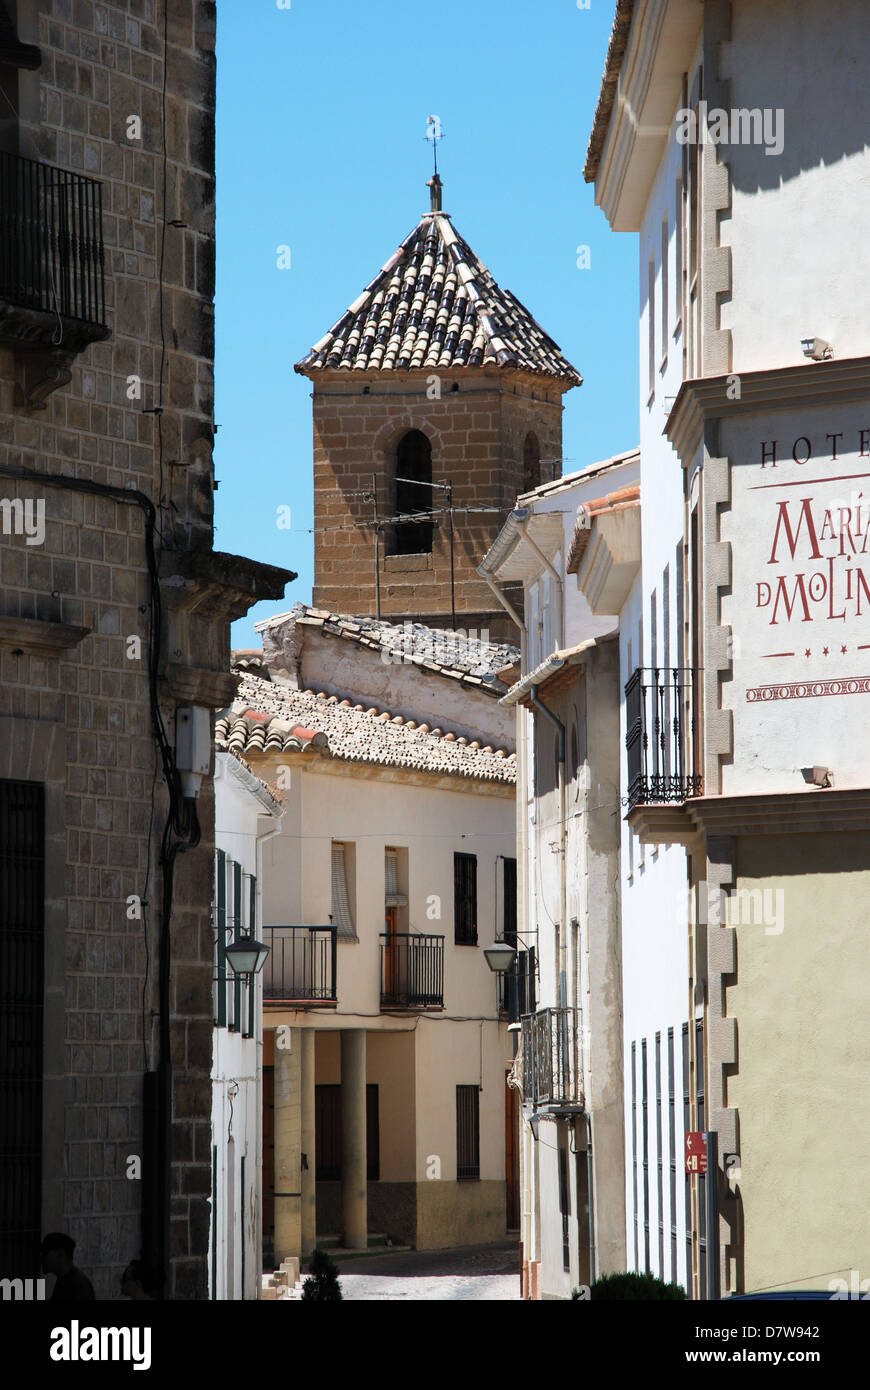 Típica ciudad antigua calle angosta con la torre de la iglesia hacia la parte trasera, Úbeda, provincia de Jaén, Andalucía, España, Europa Occidental. Foto de stock